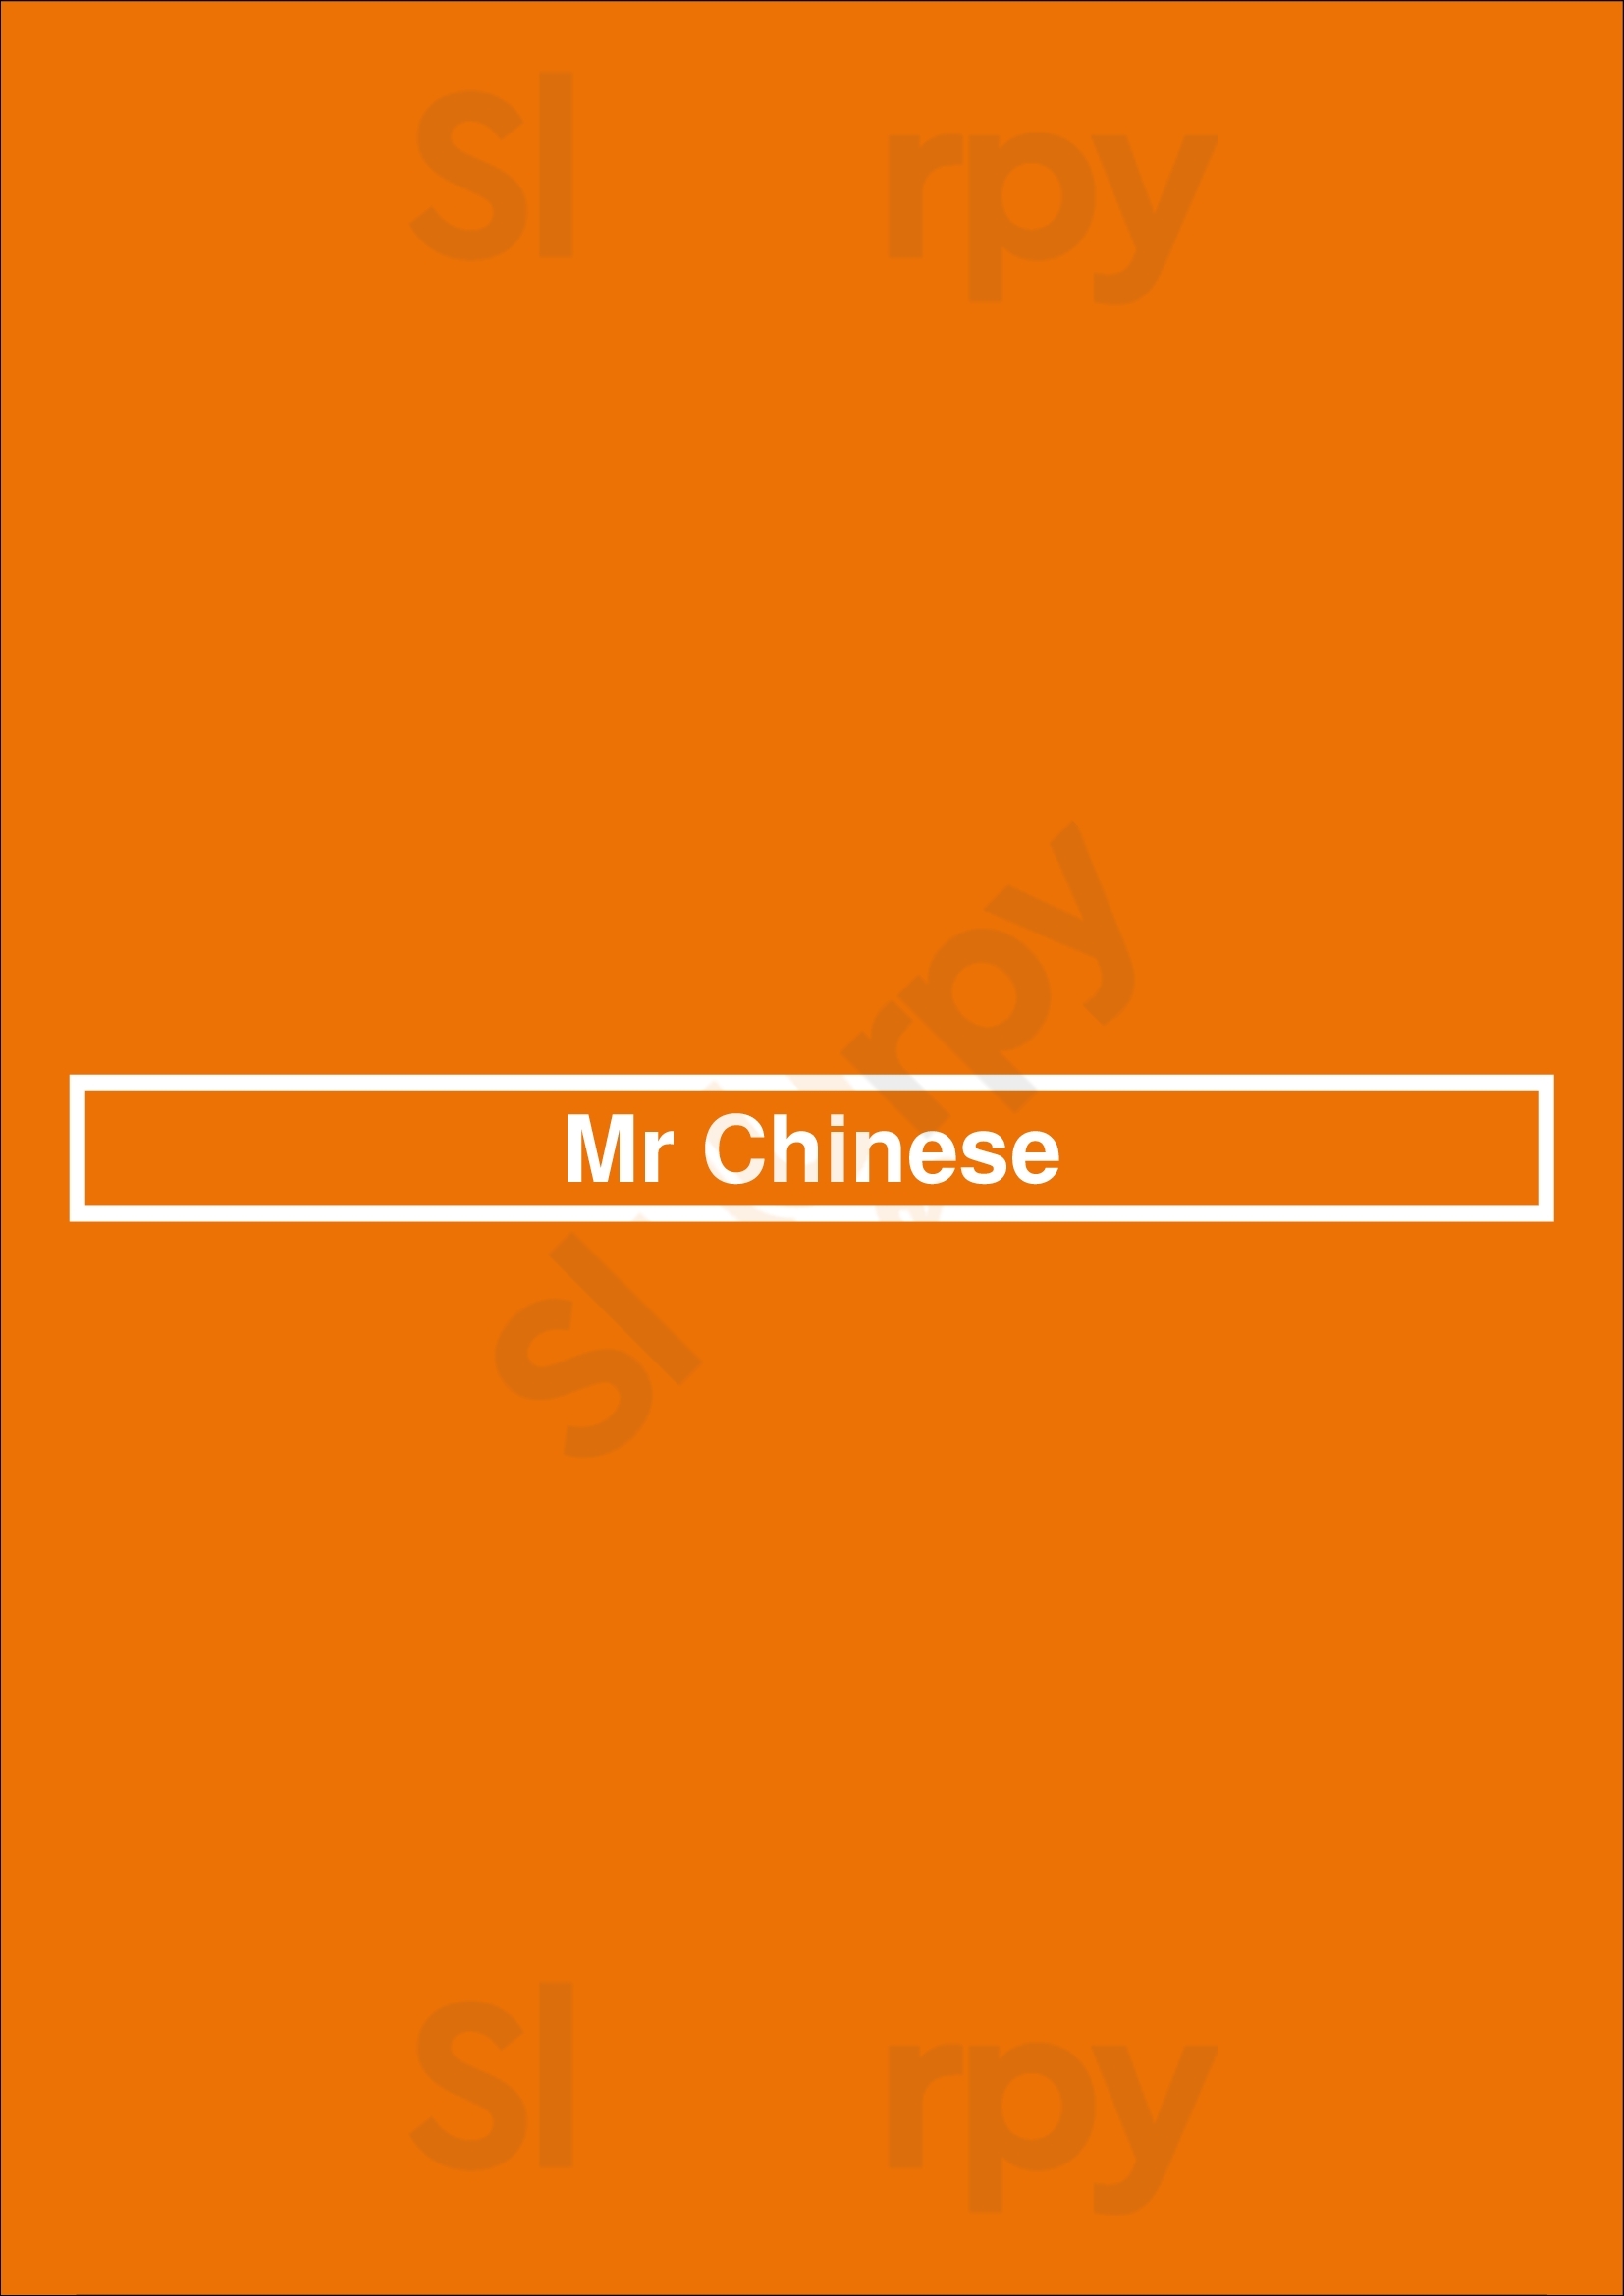 Mr Chinese London Menu - 1